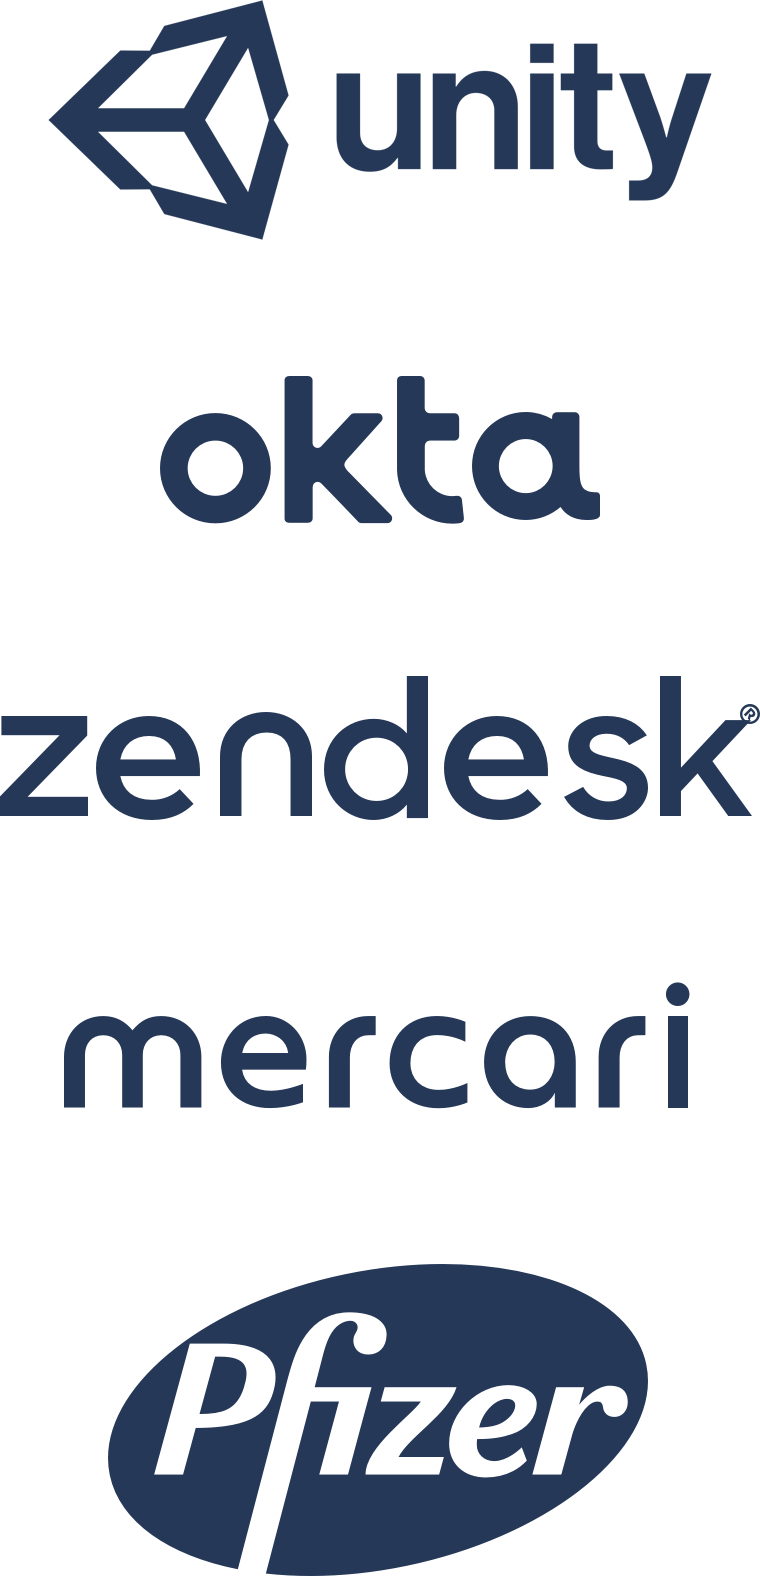 Unity, Okta, Zendesk, Mercari, Pfizer emblémák